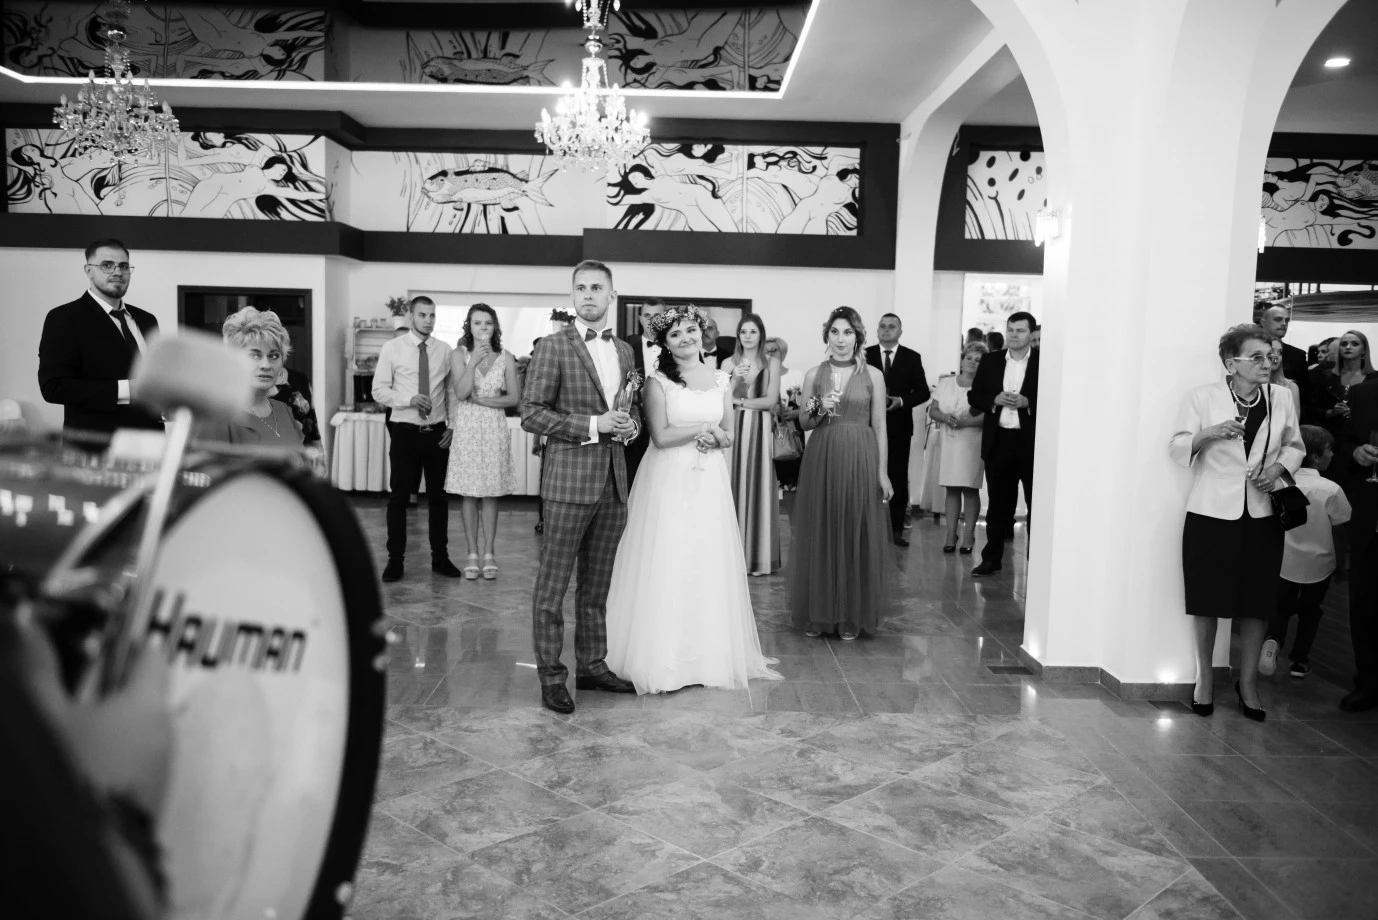 zdjęcia ozorkow fotograf rs-photo-rafal-stanulewicz portfolio zdjecia slubne inspiracje wesele plener slubny sesja slubna